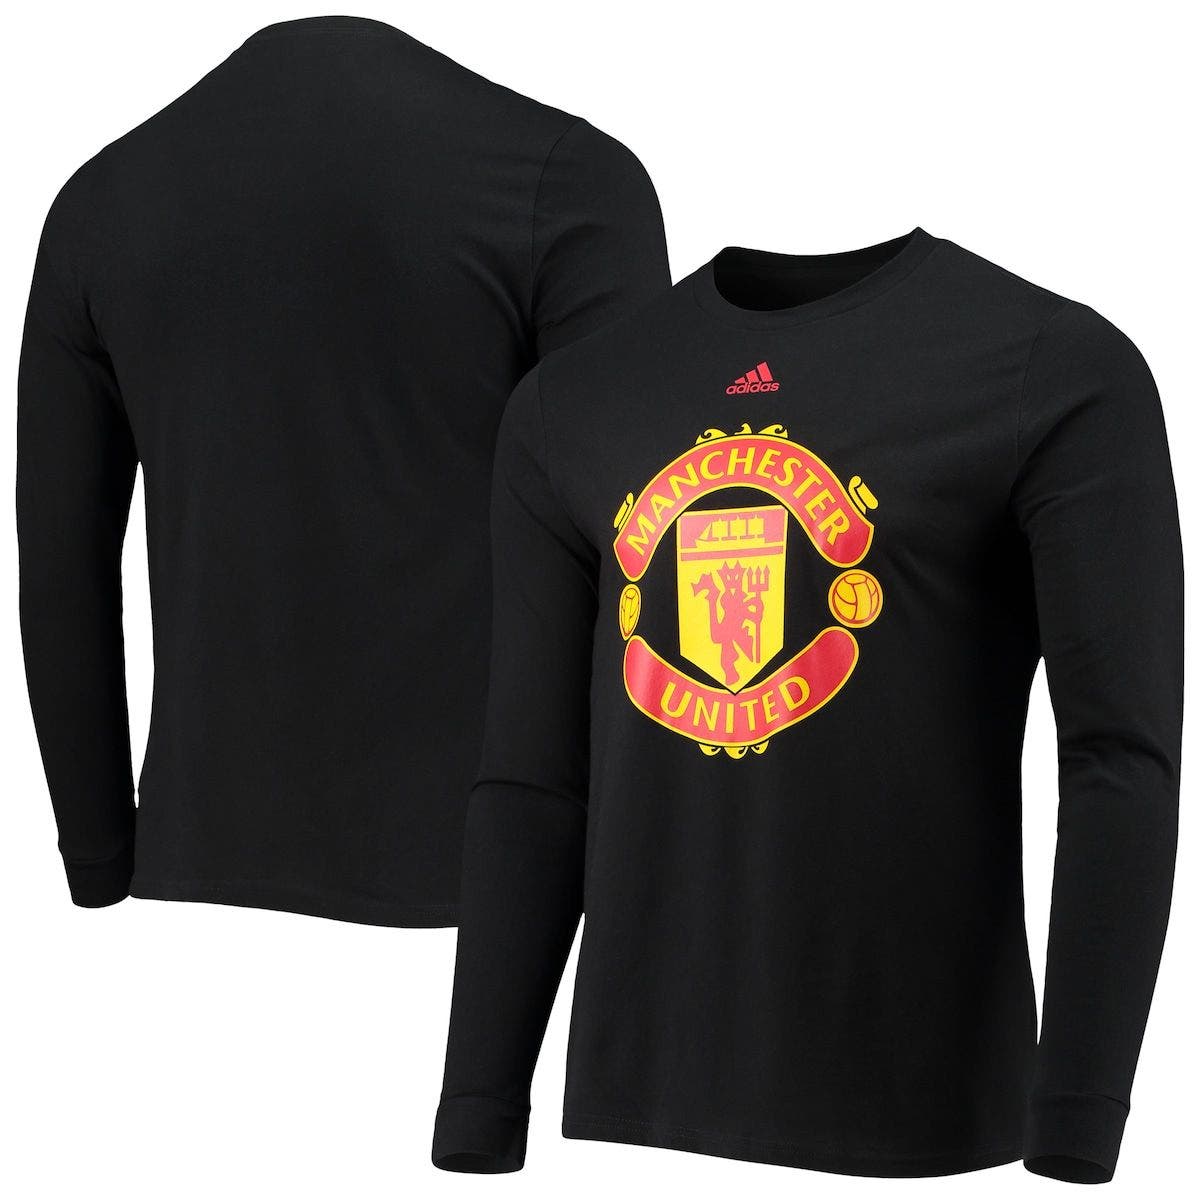 Manchester Utd 3 Lions club et pays petit Crest T-shirt kids